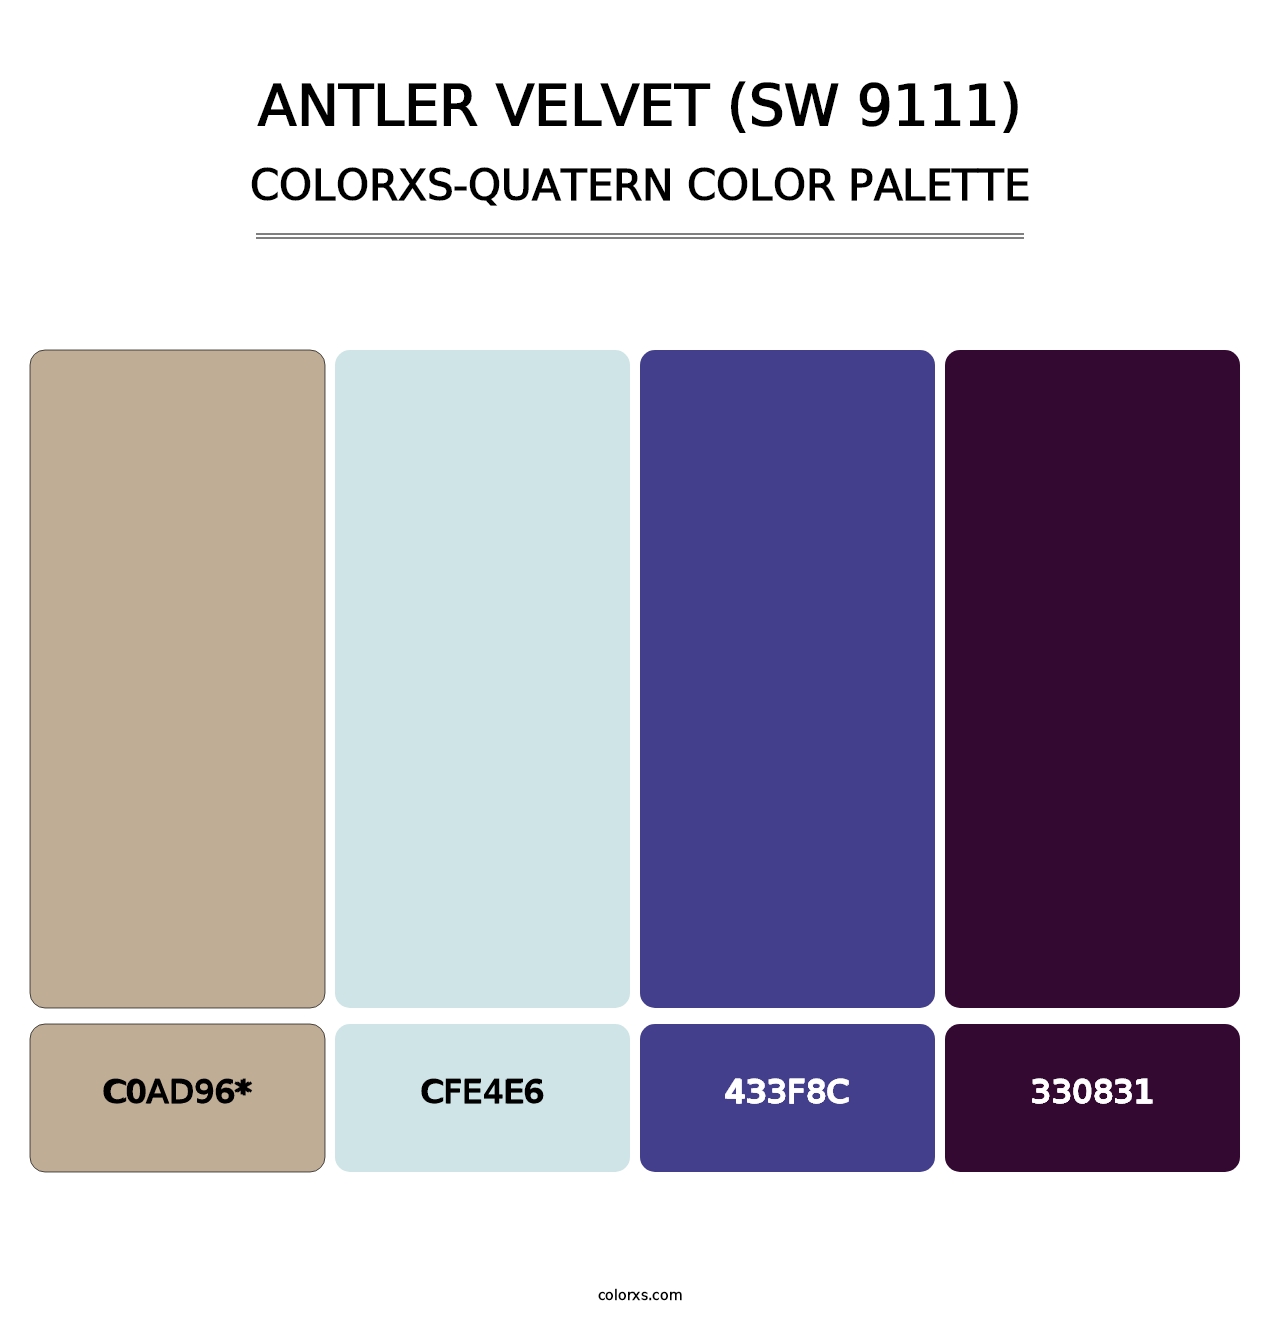 Antler Velvet (SW 9111) - Colorxs Quatern Palette